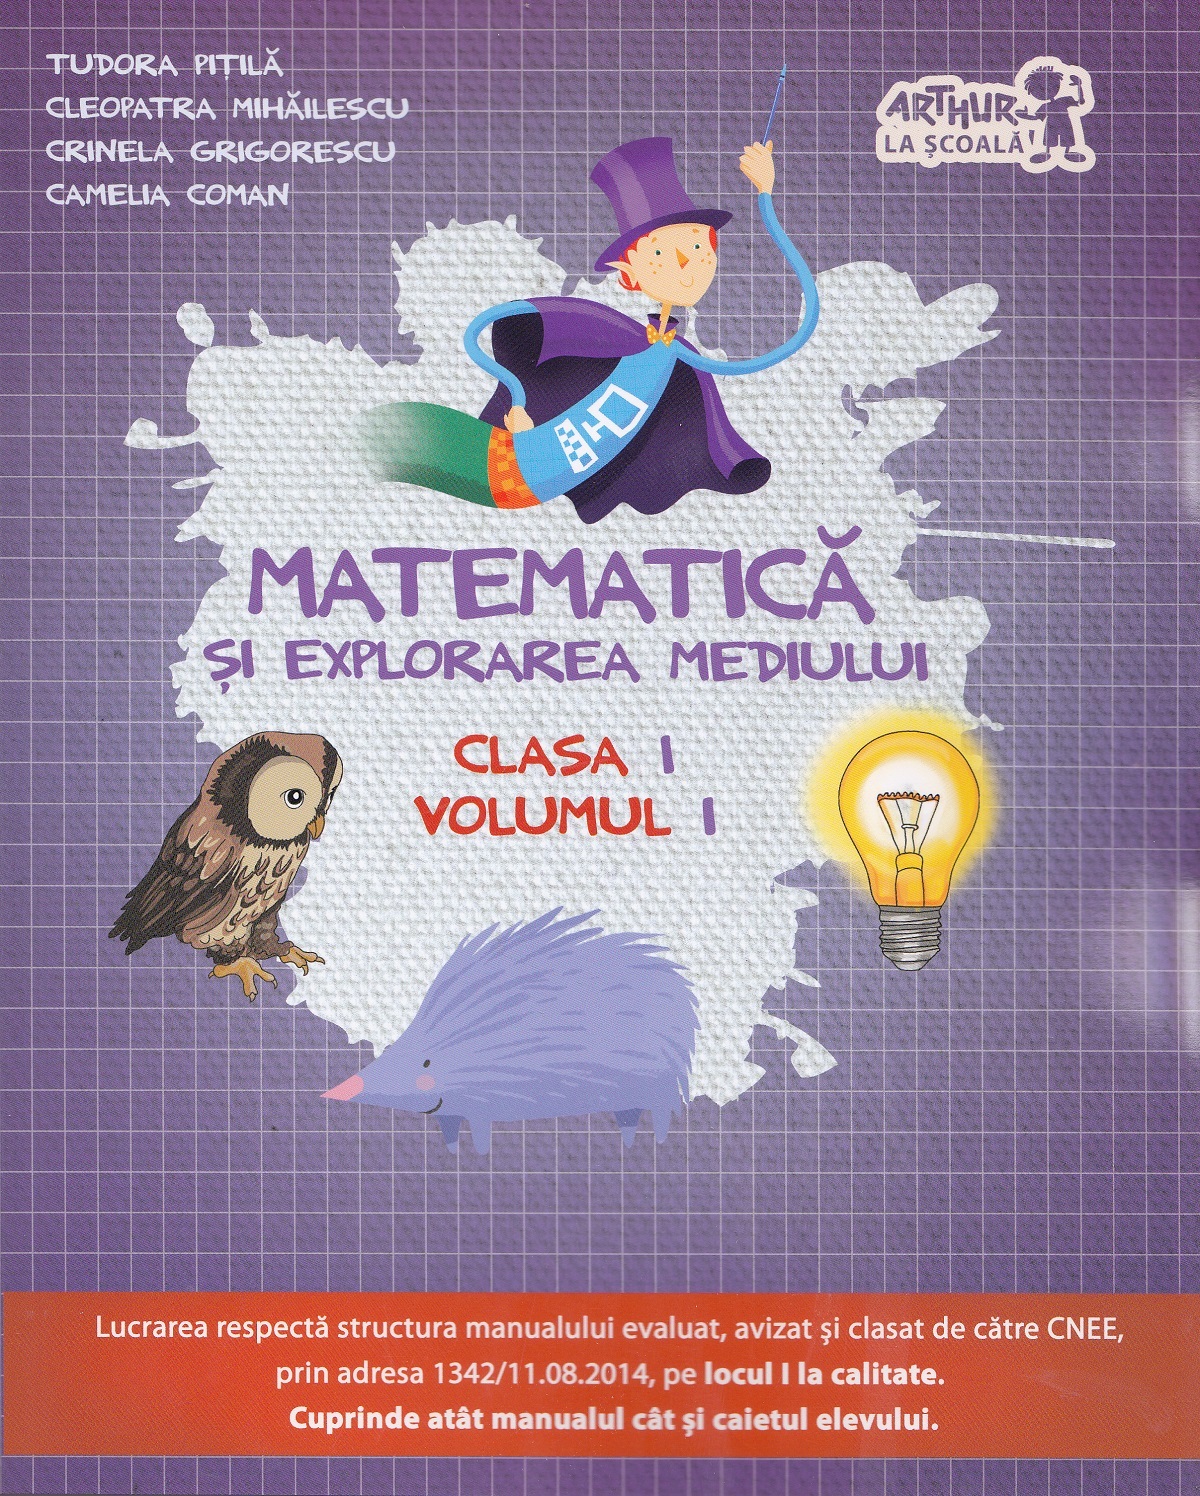 Matematica si explorarea mediului - Clasa 1 Vol.1 - Tudora Pitila, Cleopatra Mihailescu